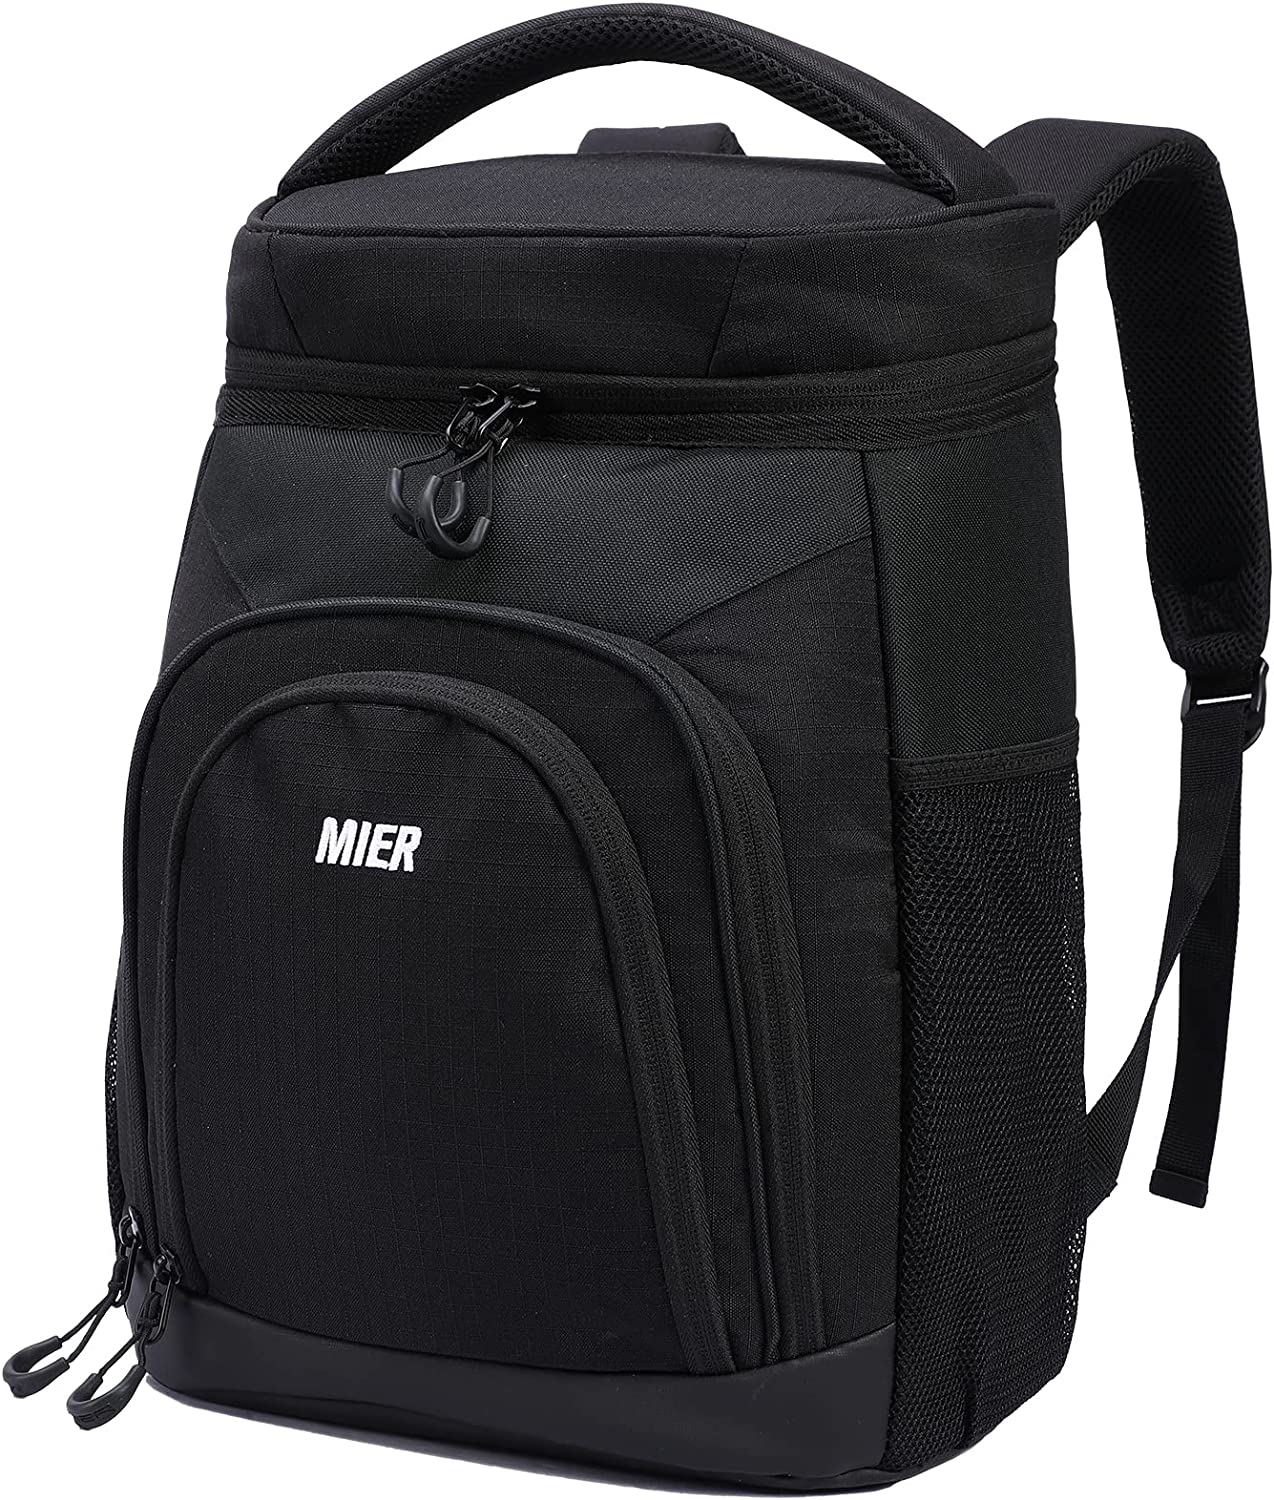 MIER PEVA-Lined 3-Pocket Backpack Cooler